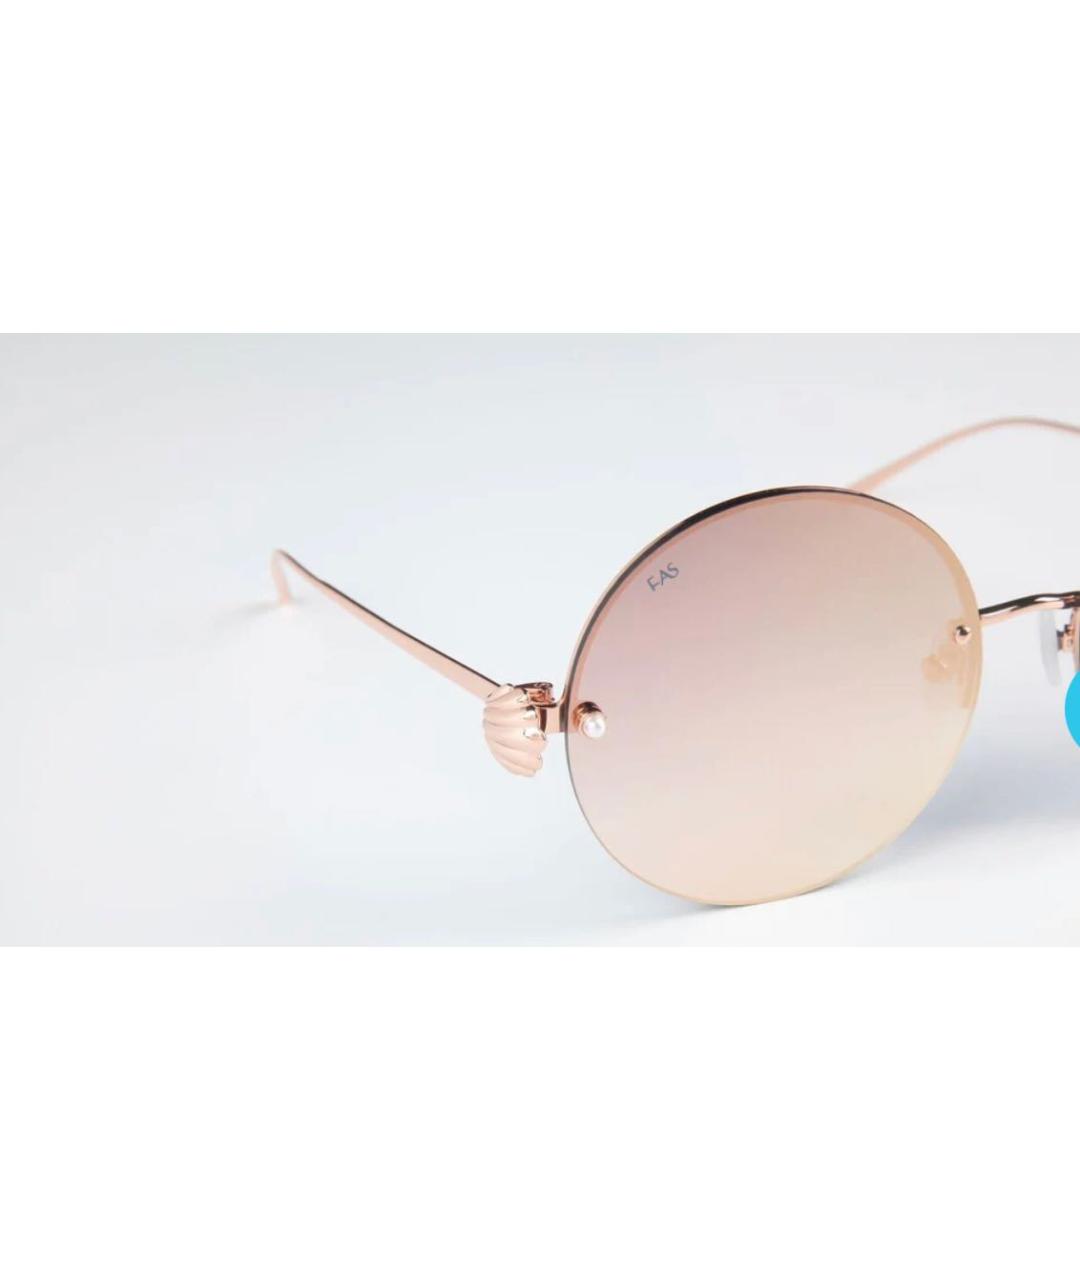 FOR ART'S SAKE Розовые пластиковые солнцезащитные очки, фото 2